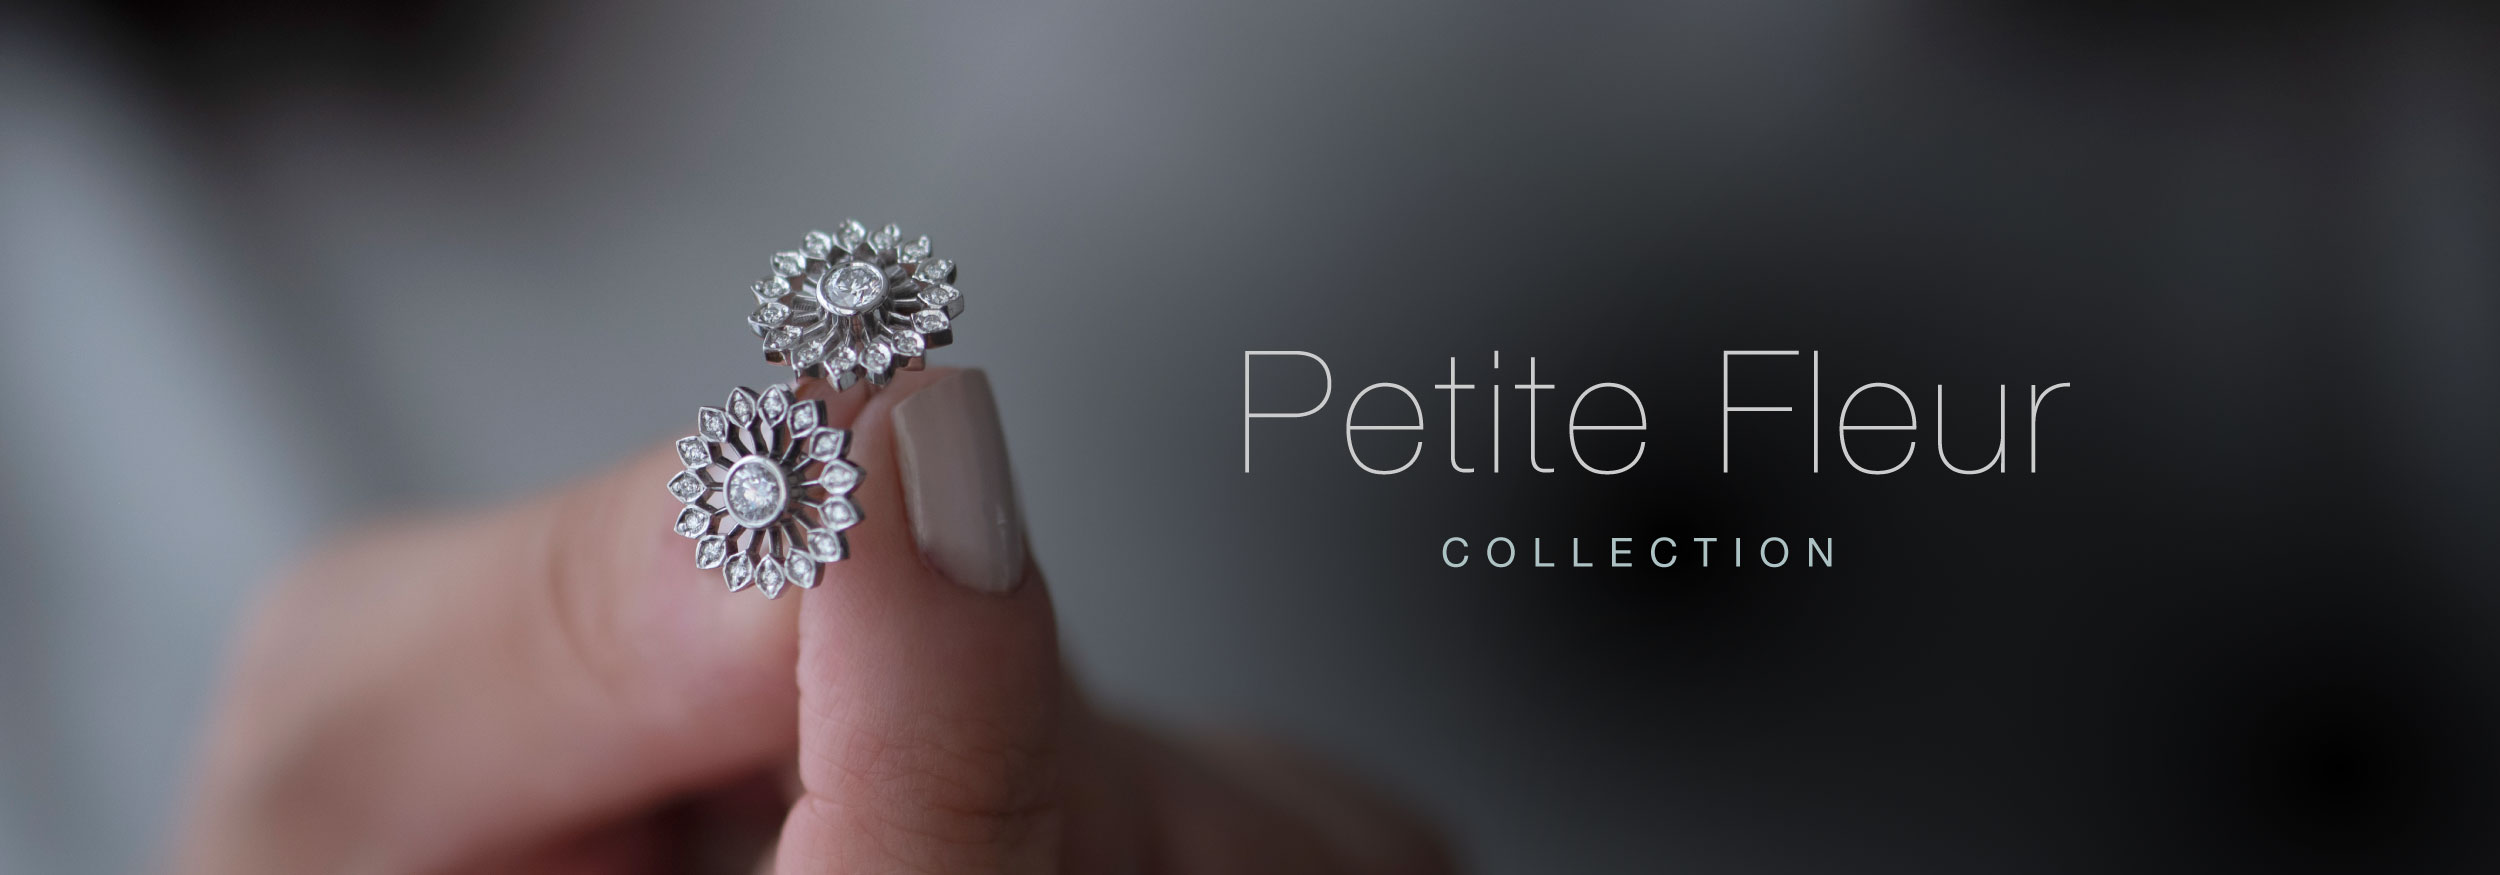 Dandelion Petite Fleur Diamond Earrings